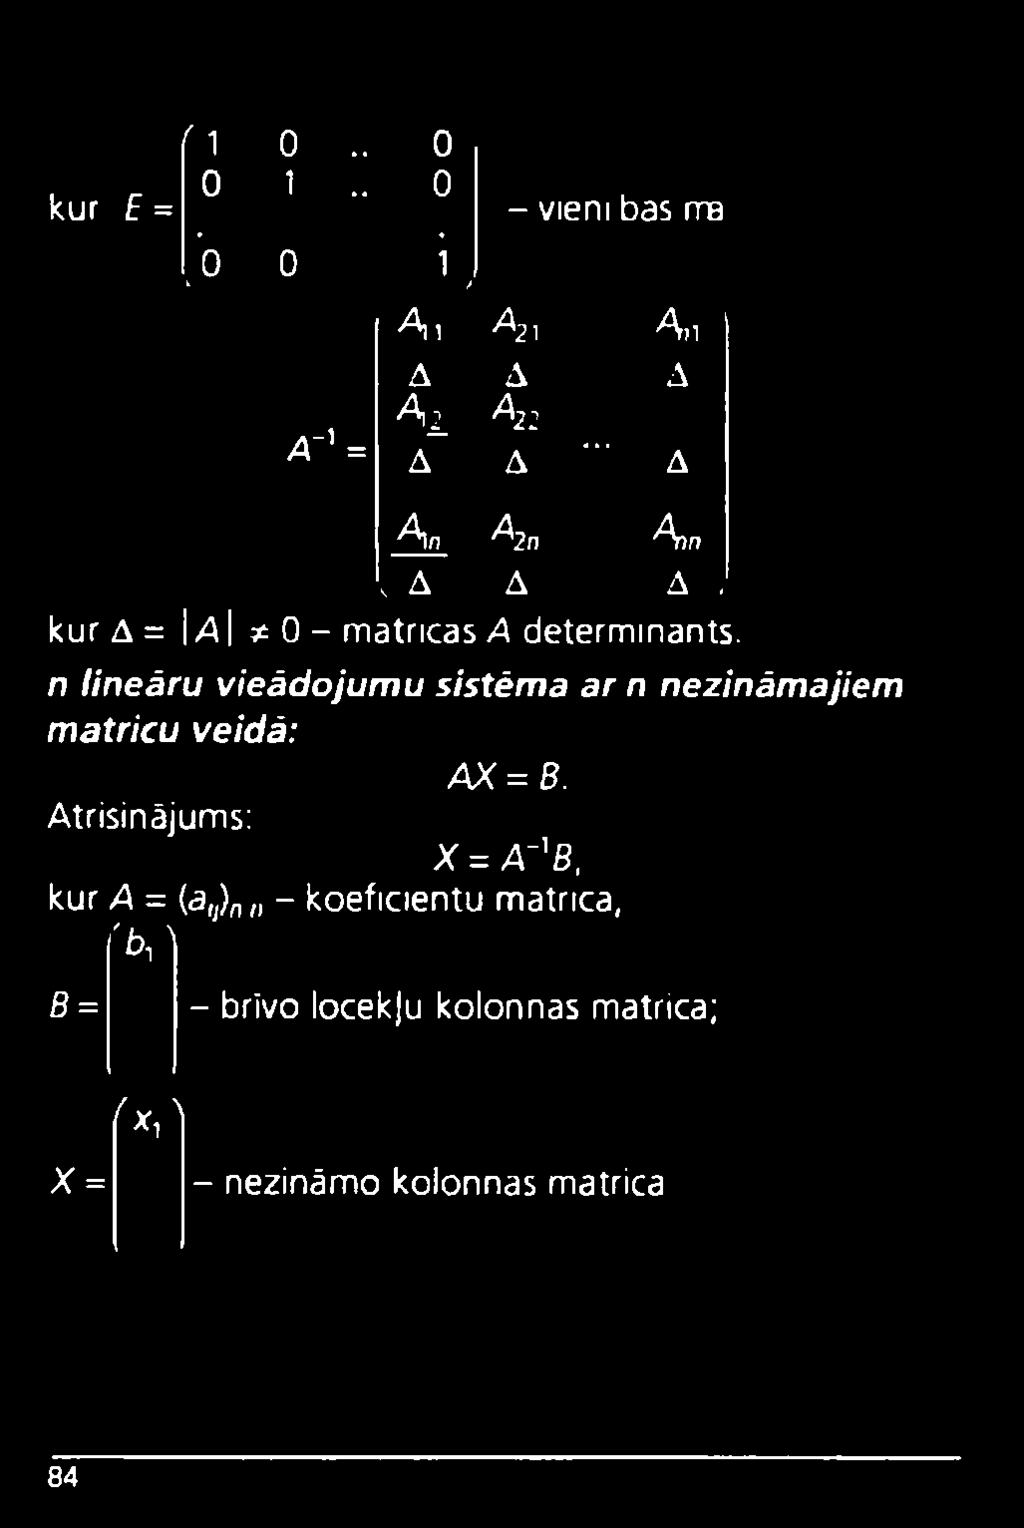 A A j kur A = IA ^ 0 - m atricas A determ inants.